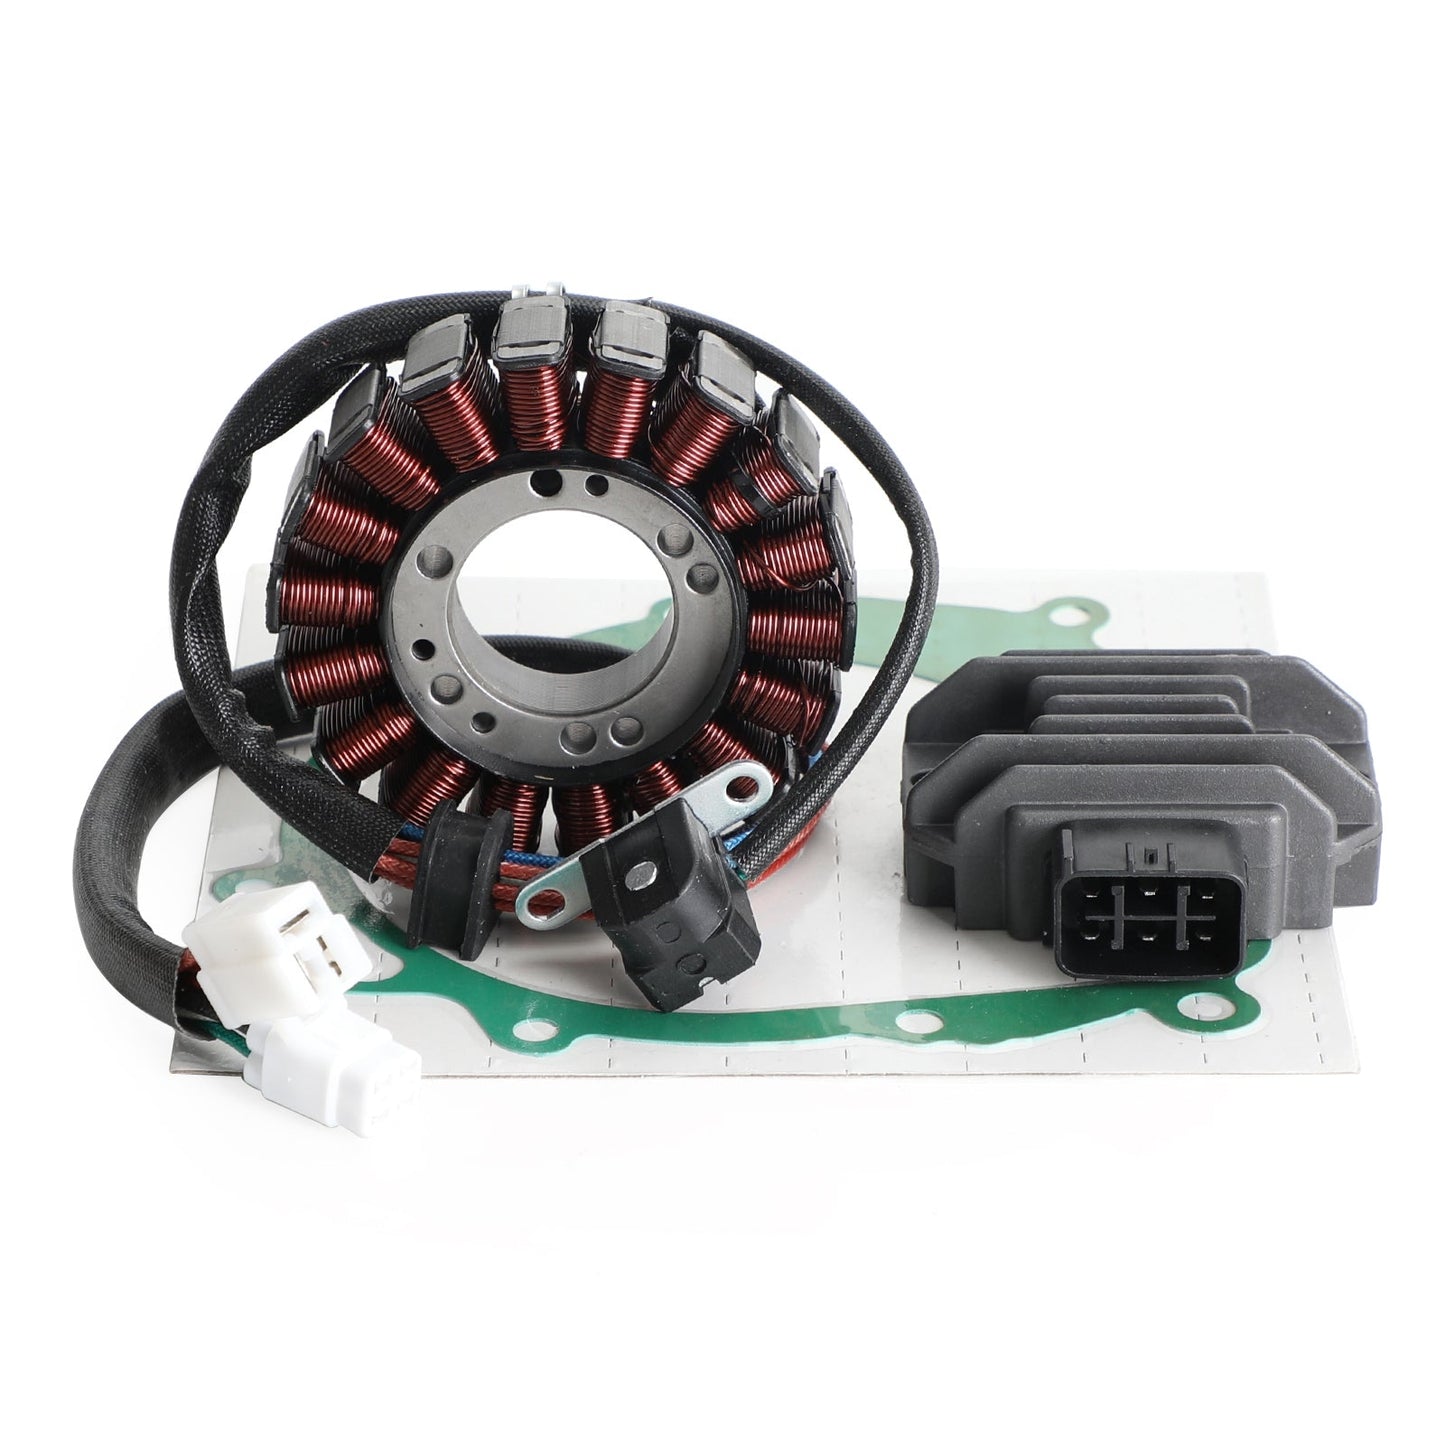 Magneto Stator+Voltage Rectifier+Gasket For Suzuki LTZ400 Quadsport Z400 03-08